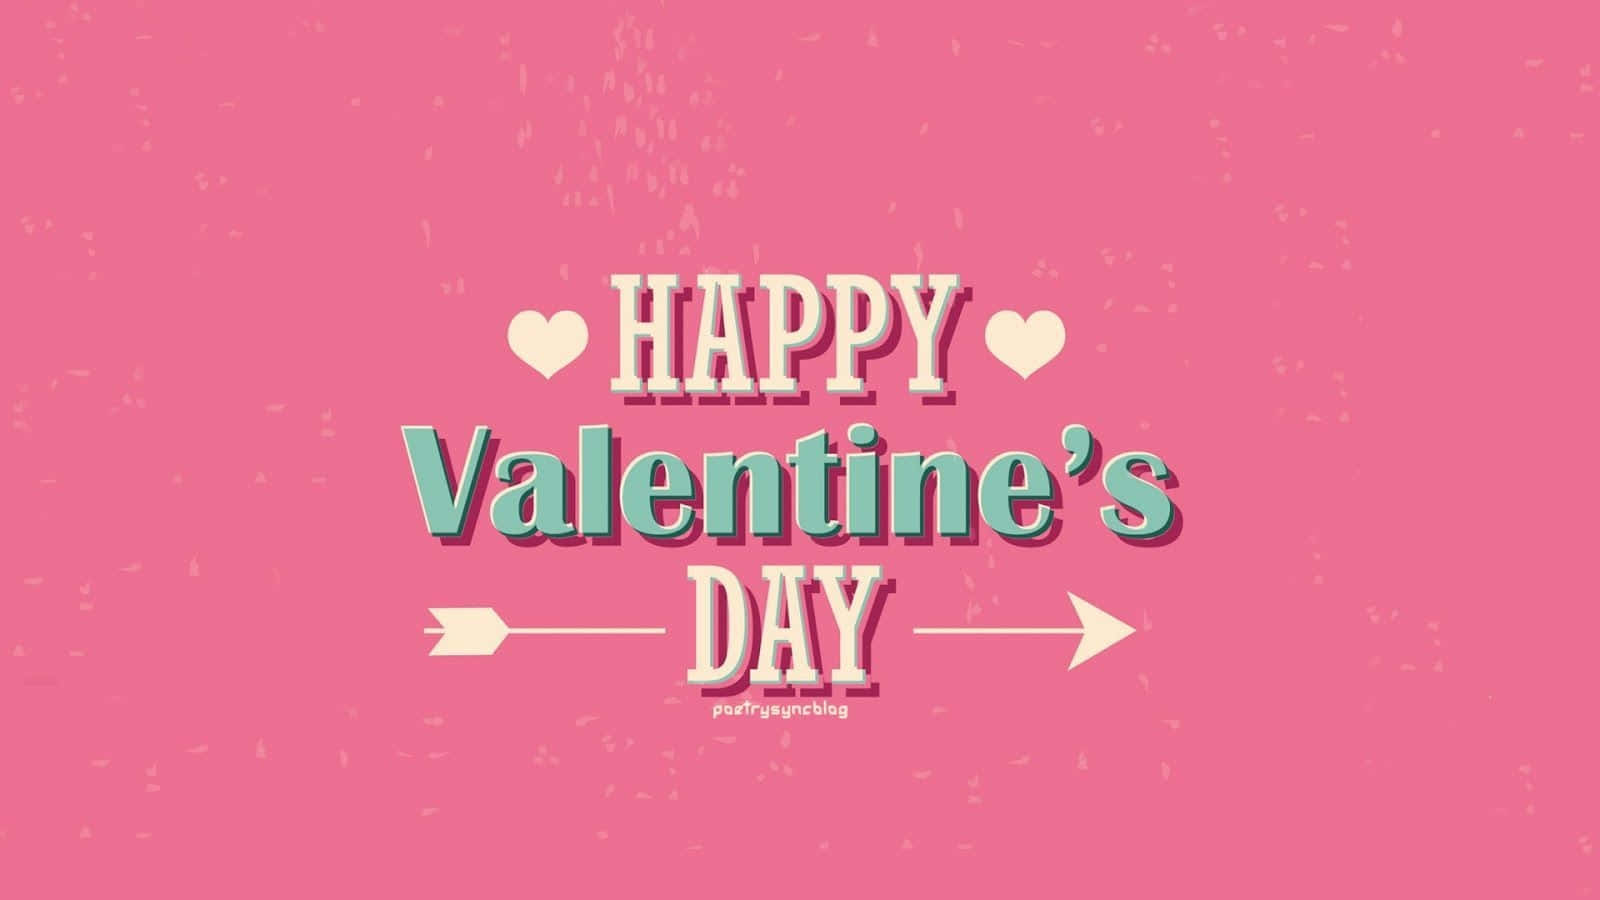 Free Cute Valentine Wallpaper Downloads, Cute Valentine Wallpaper for FREE